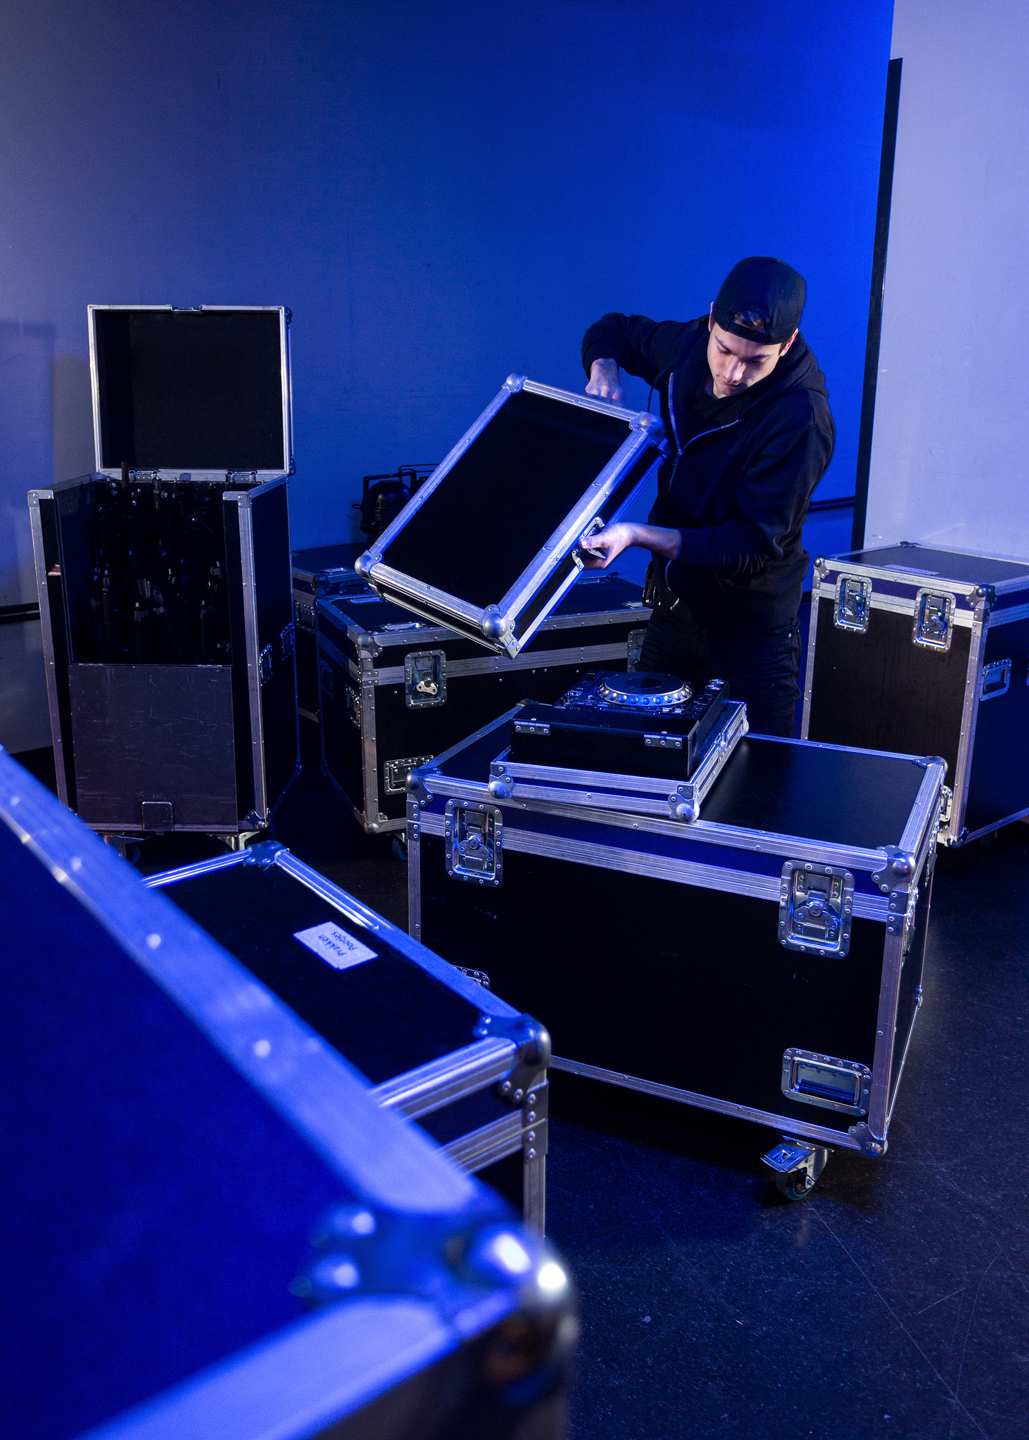 A stagehand packing up AV equipment.